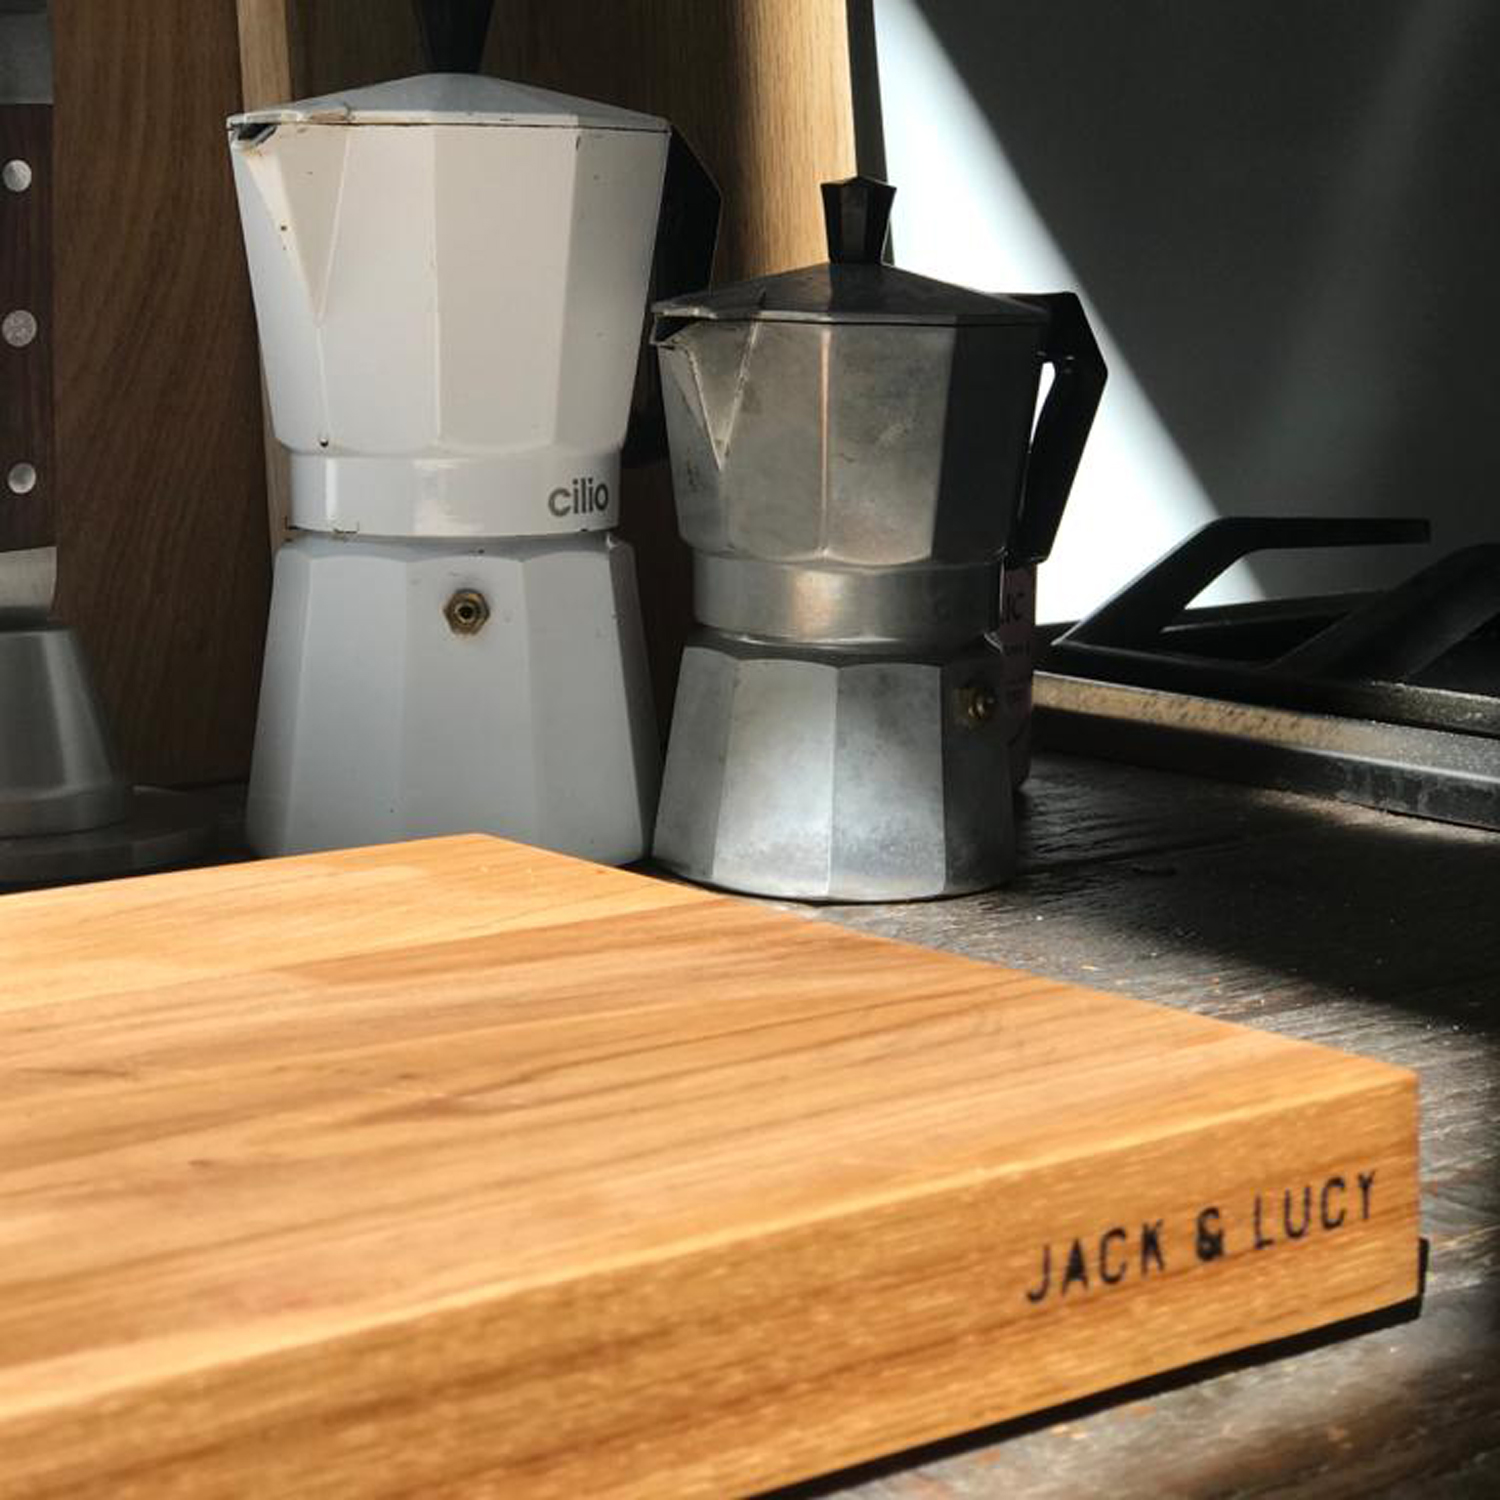 Jack&Lucy ESSENTIAL Schneidebrett Reversible Eiche geölt 45x29,5cm